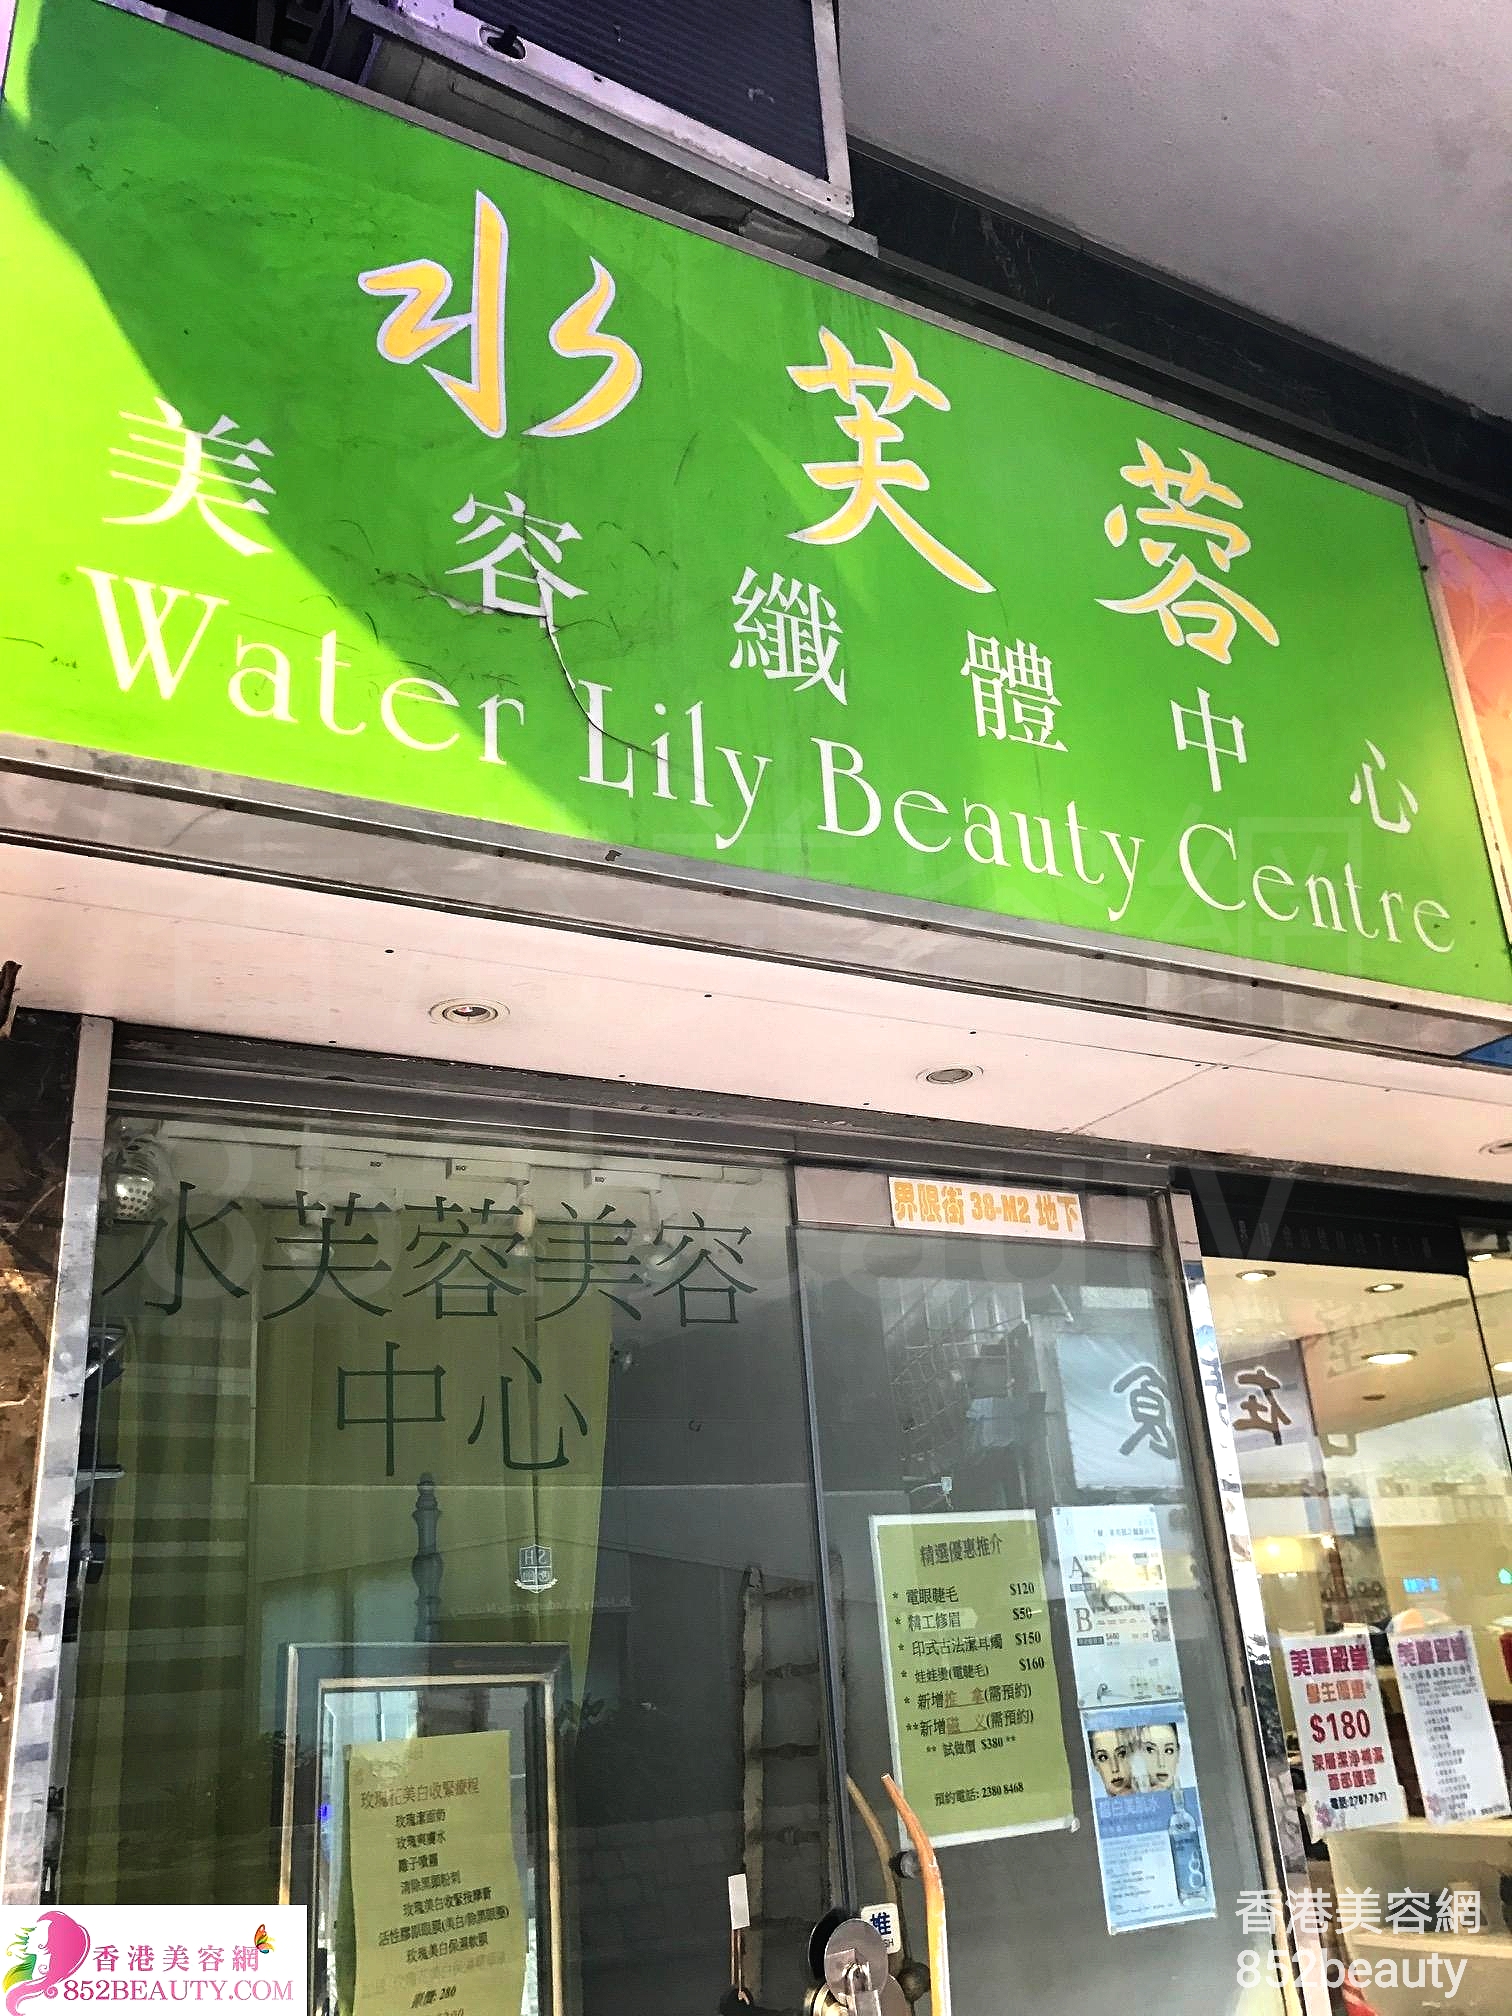 面部护理: 水芺蓉 美容纖體中心 Water Lily Beauty Centre